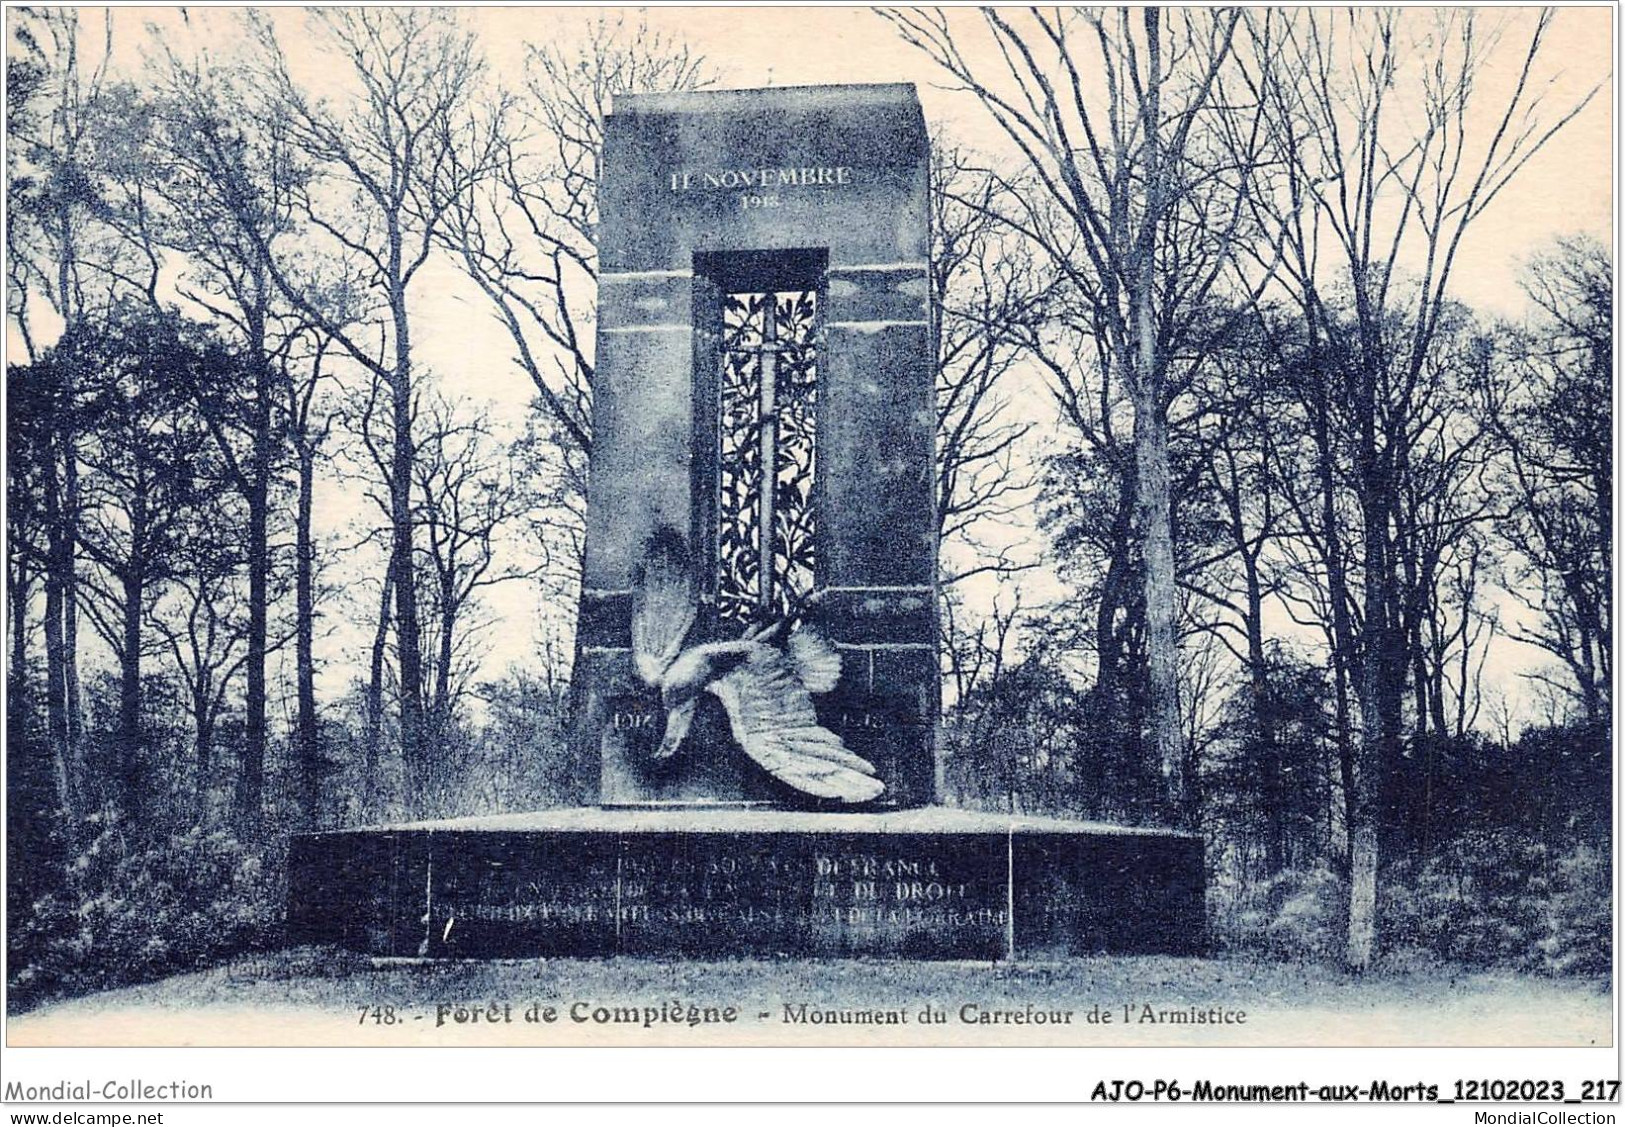 AJOP6-0616 - MONUMENT-AUX-MORTS - Foret De Compiègne - Monument Du Carrefour De L'armistice - War Memorials